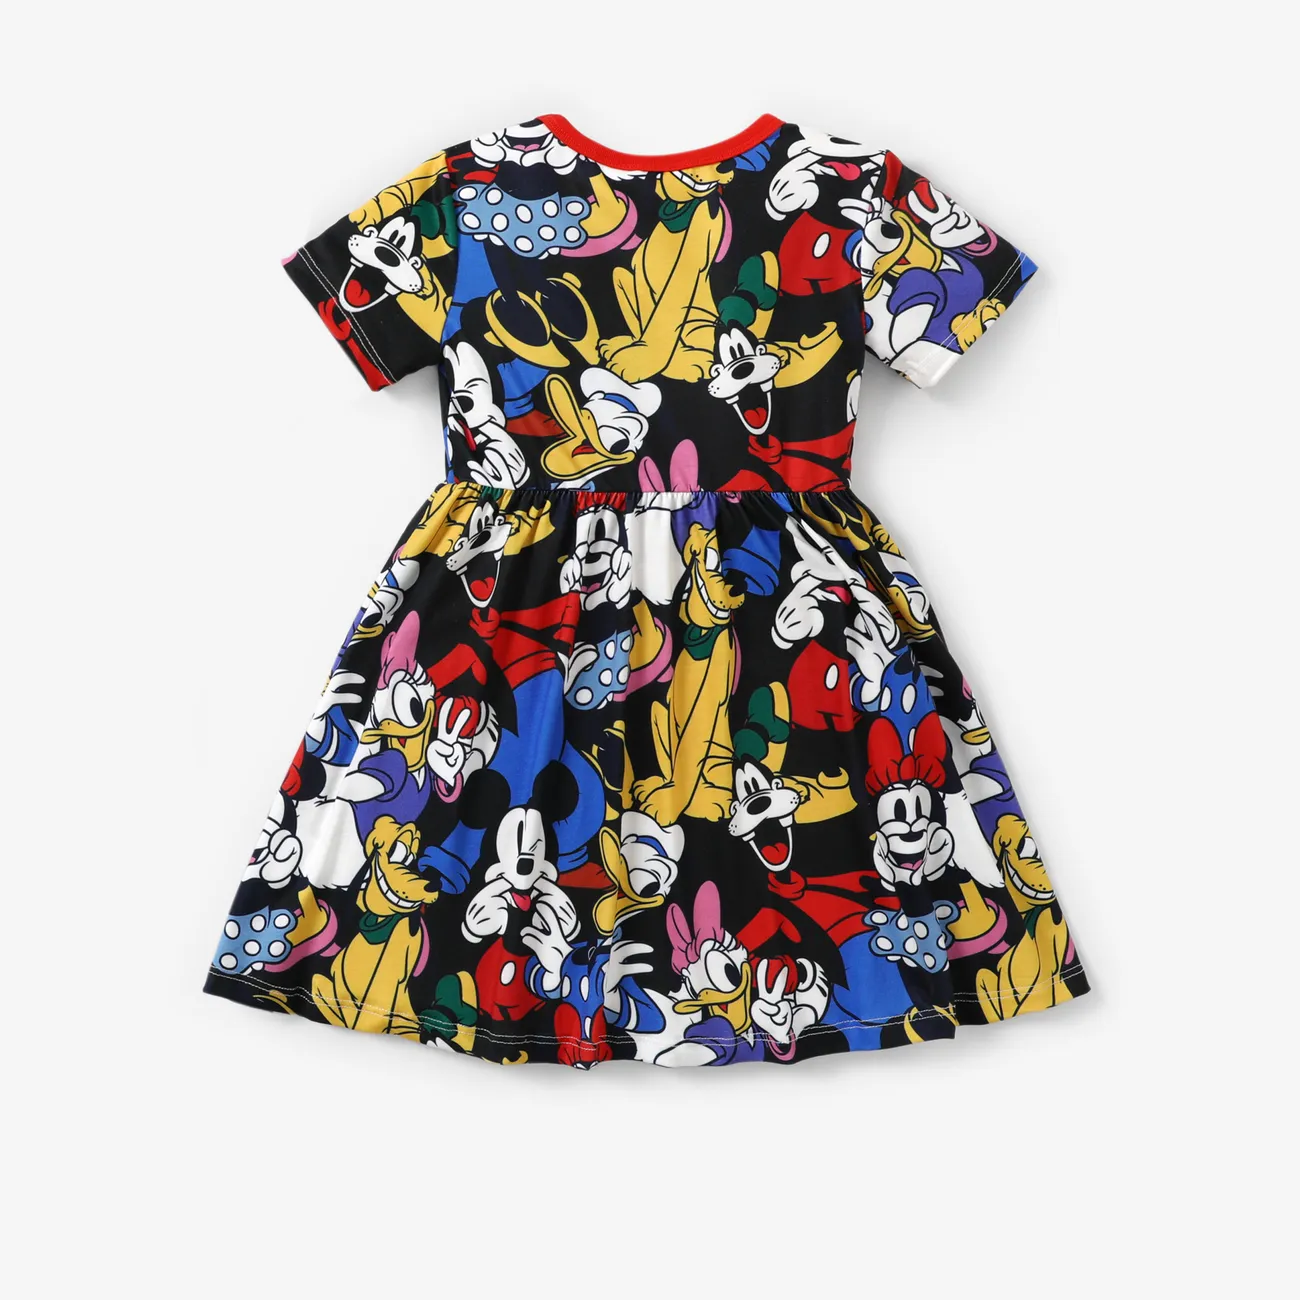 Disney Mickey and Friends 1pc Siblings Naia™ Character All-over Graffiti Print Dress/T-shirt Black big image 1